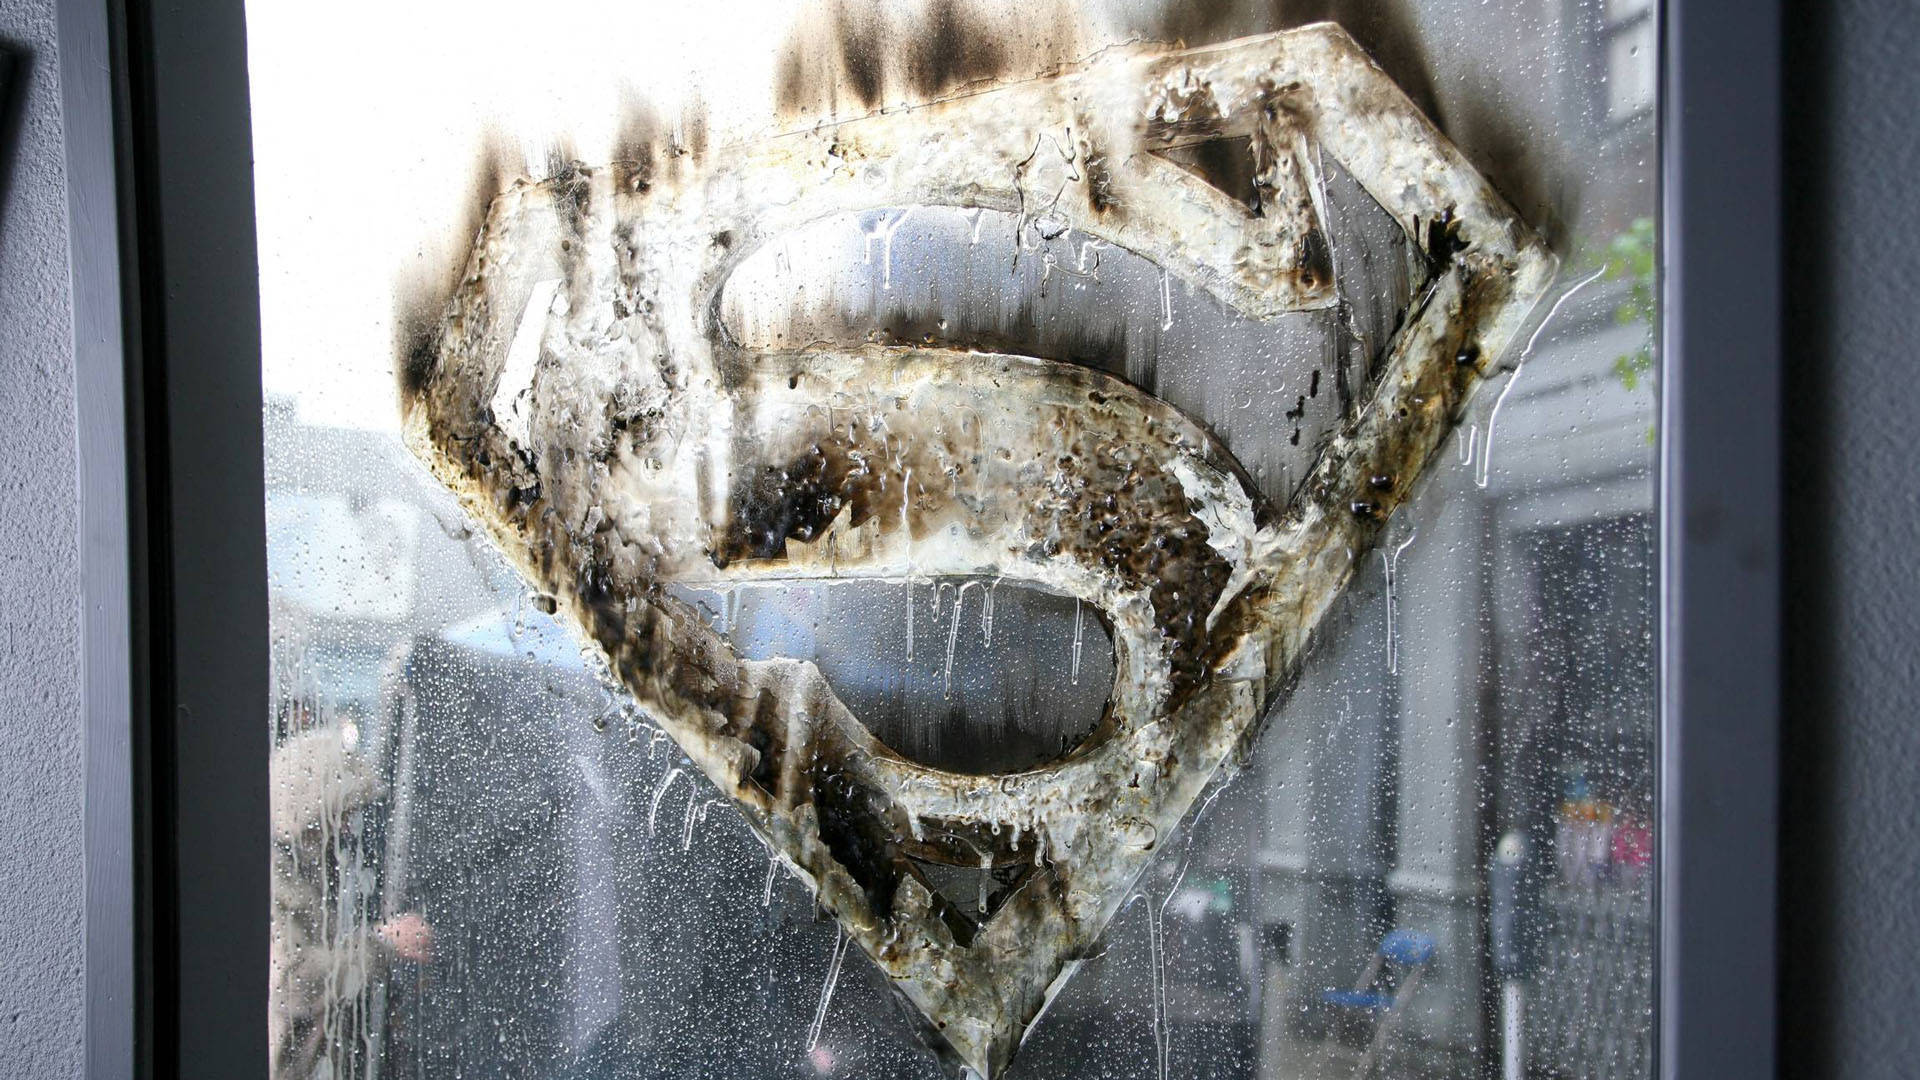 Superman-logoet Wallpaper